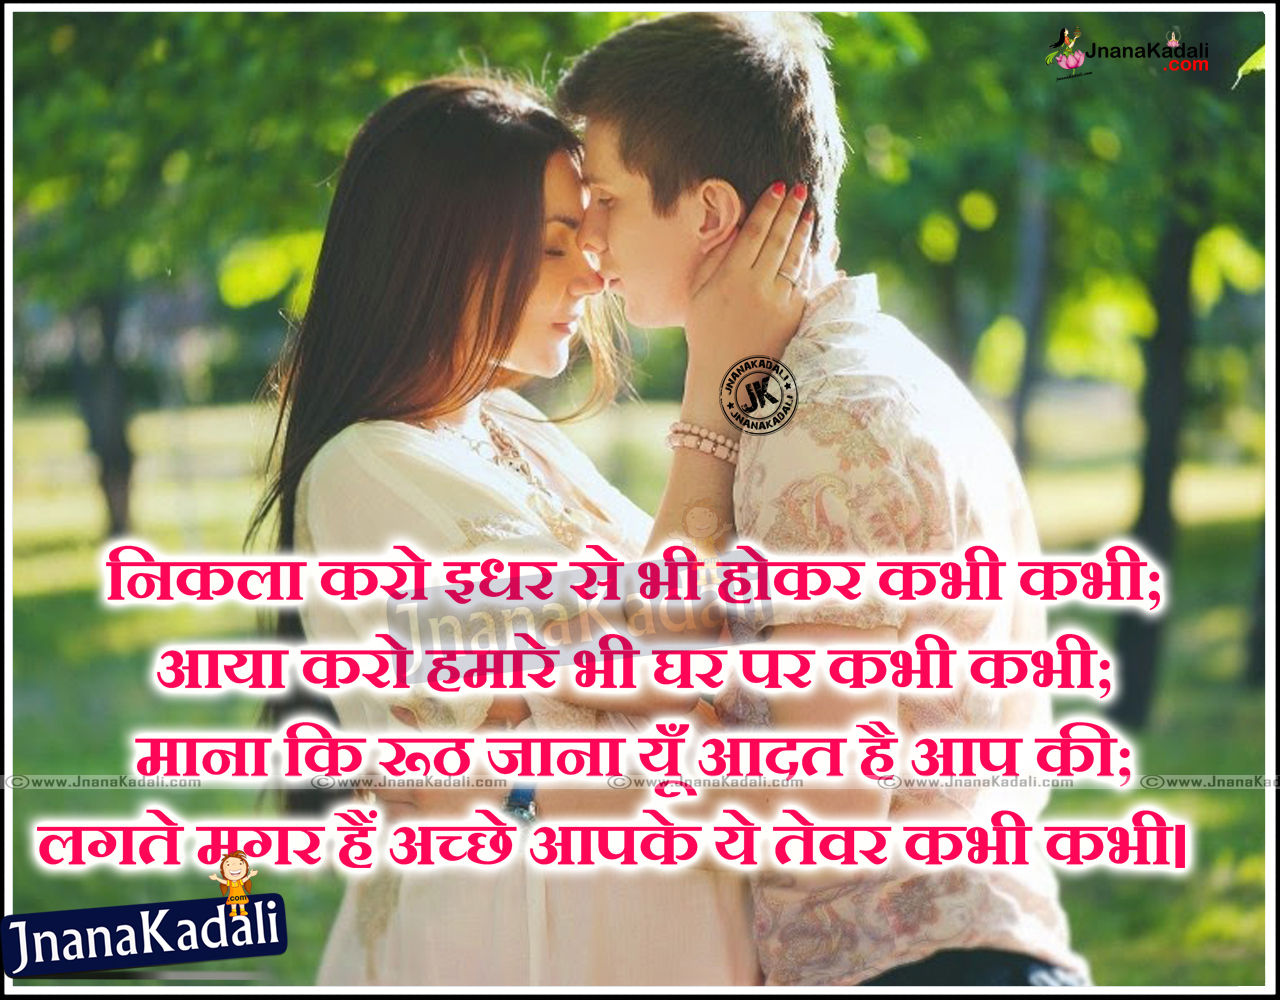 Love Quotes and Images Hindi Shayari | JNANA KADALI.COM |Telugu ...